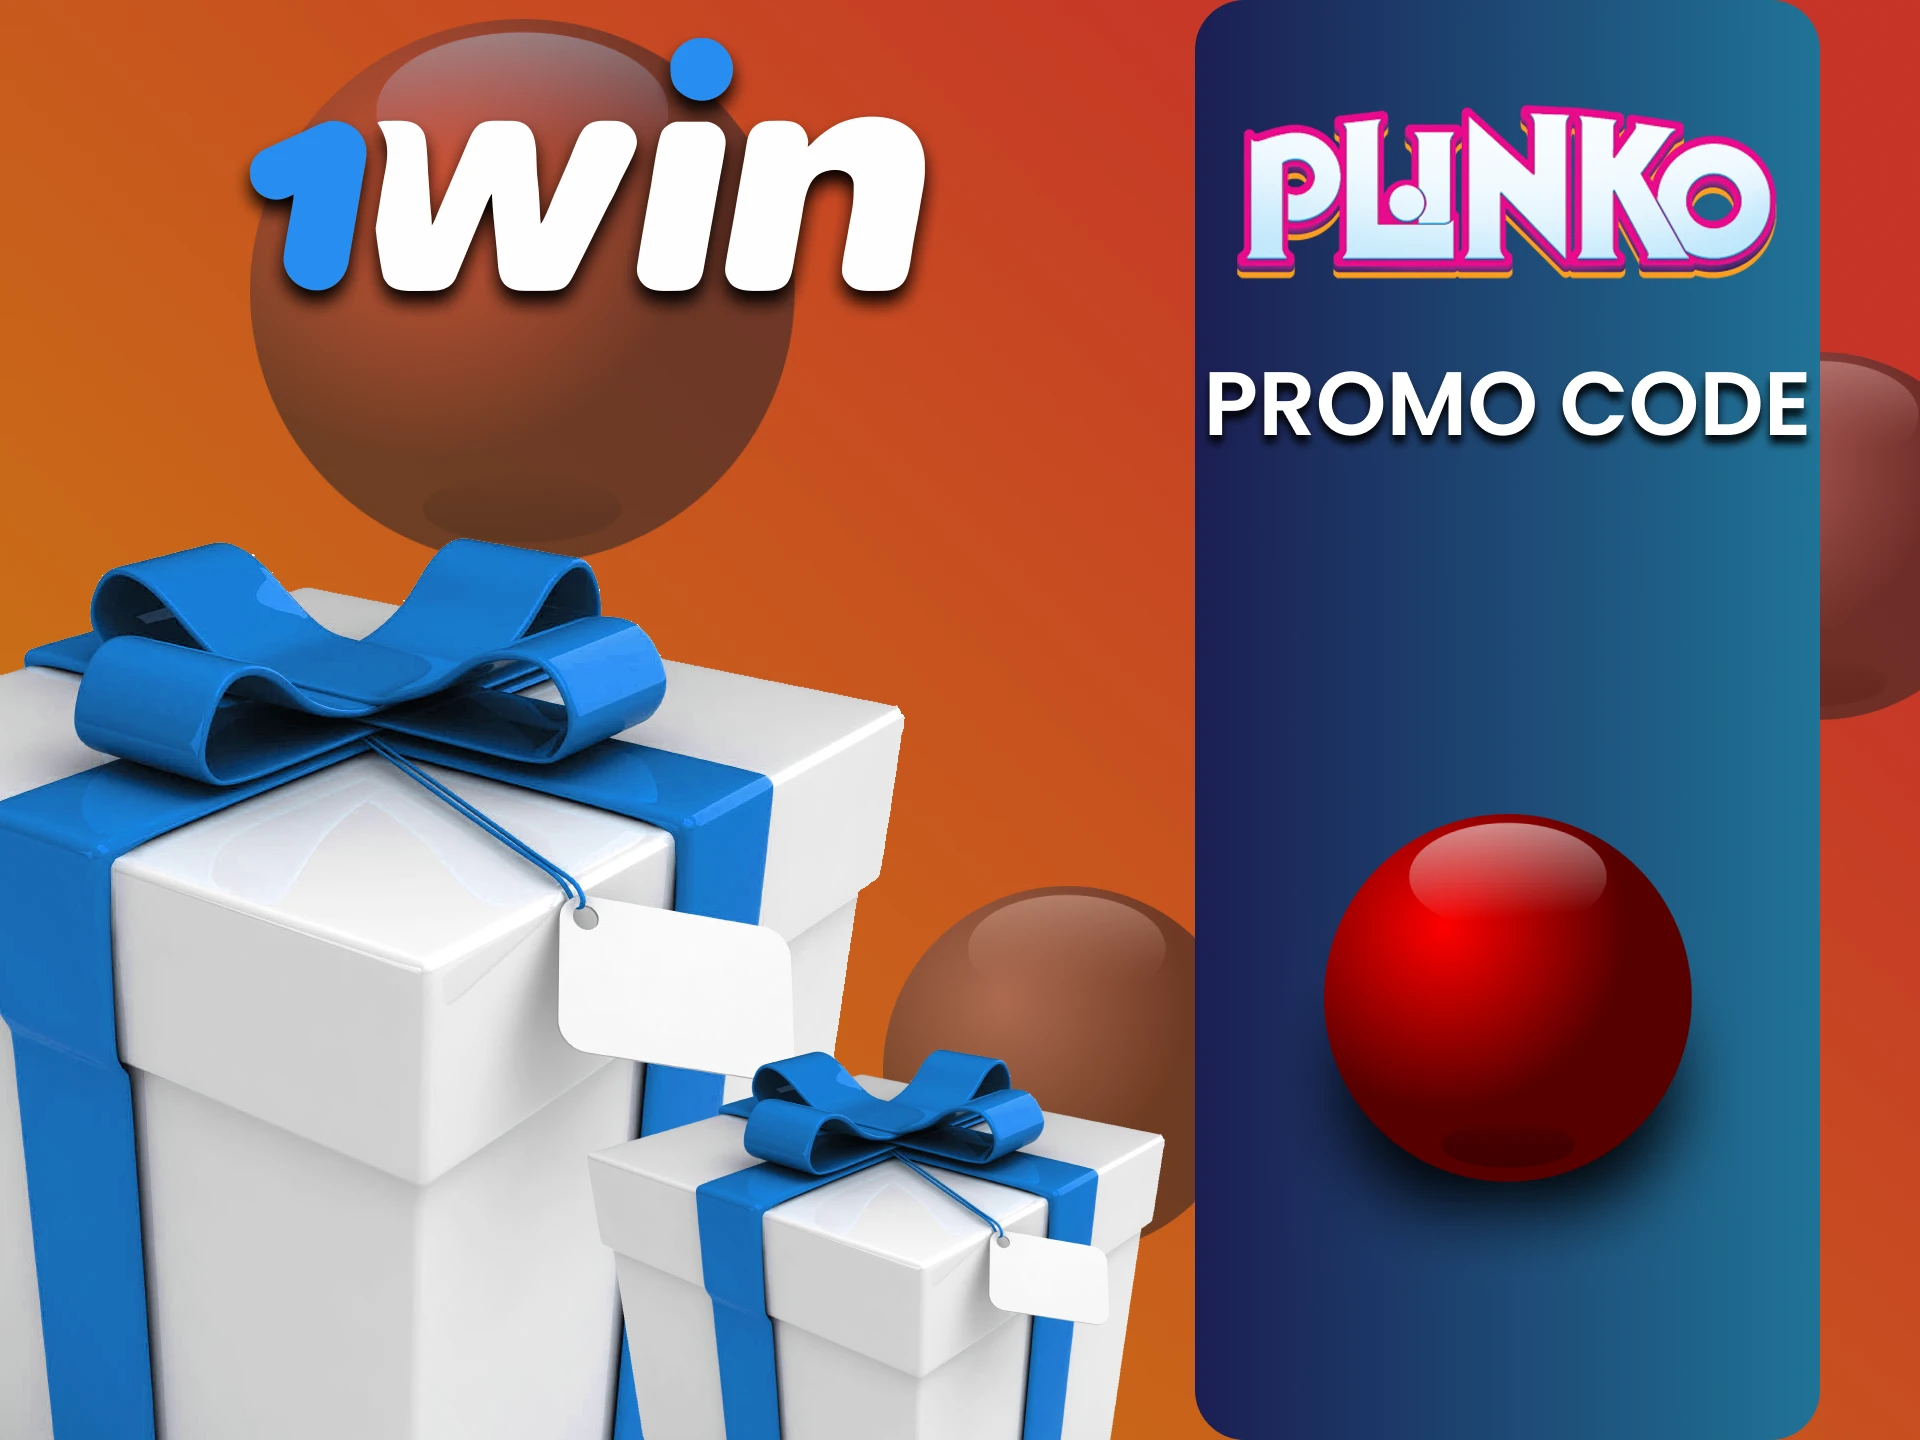 Enter the bonus code from 1win for Plinko.